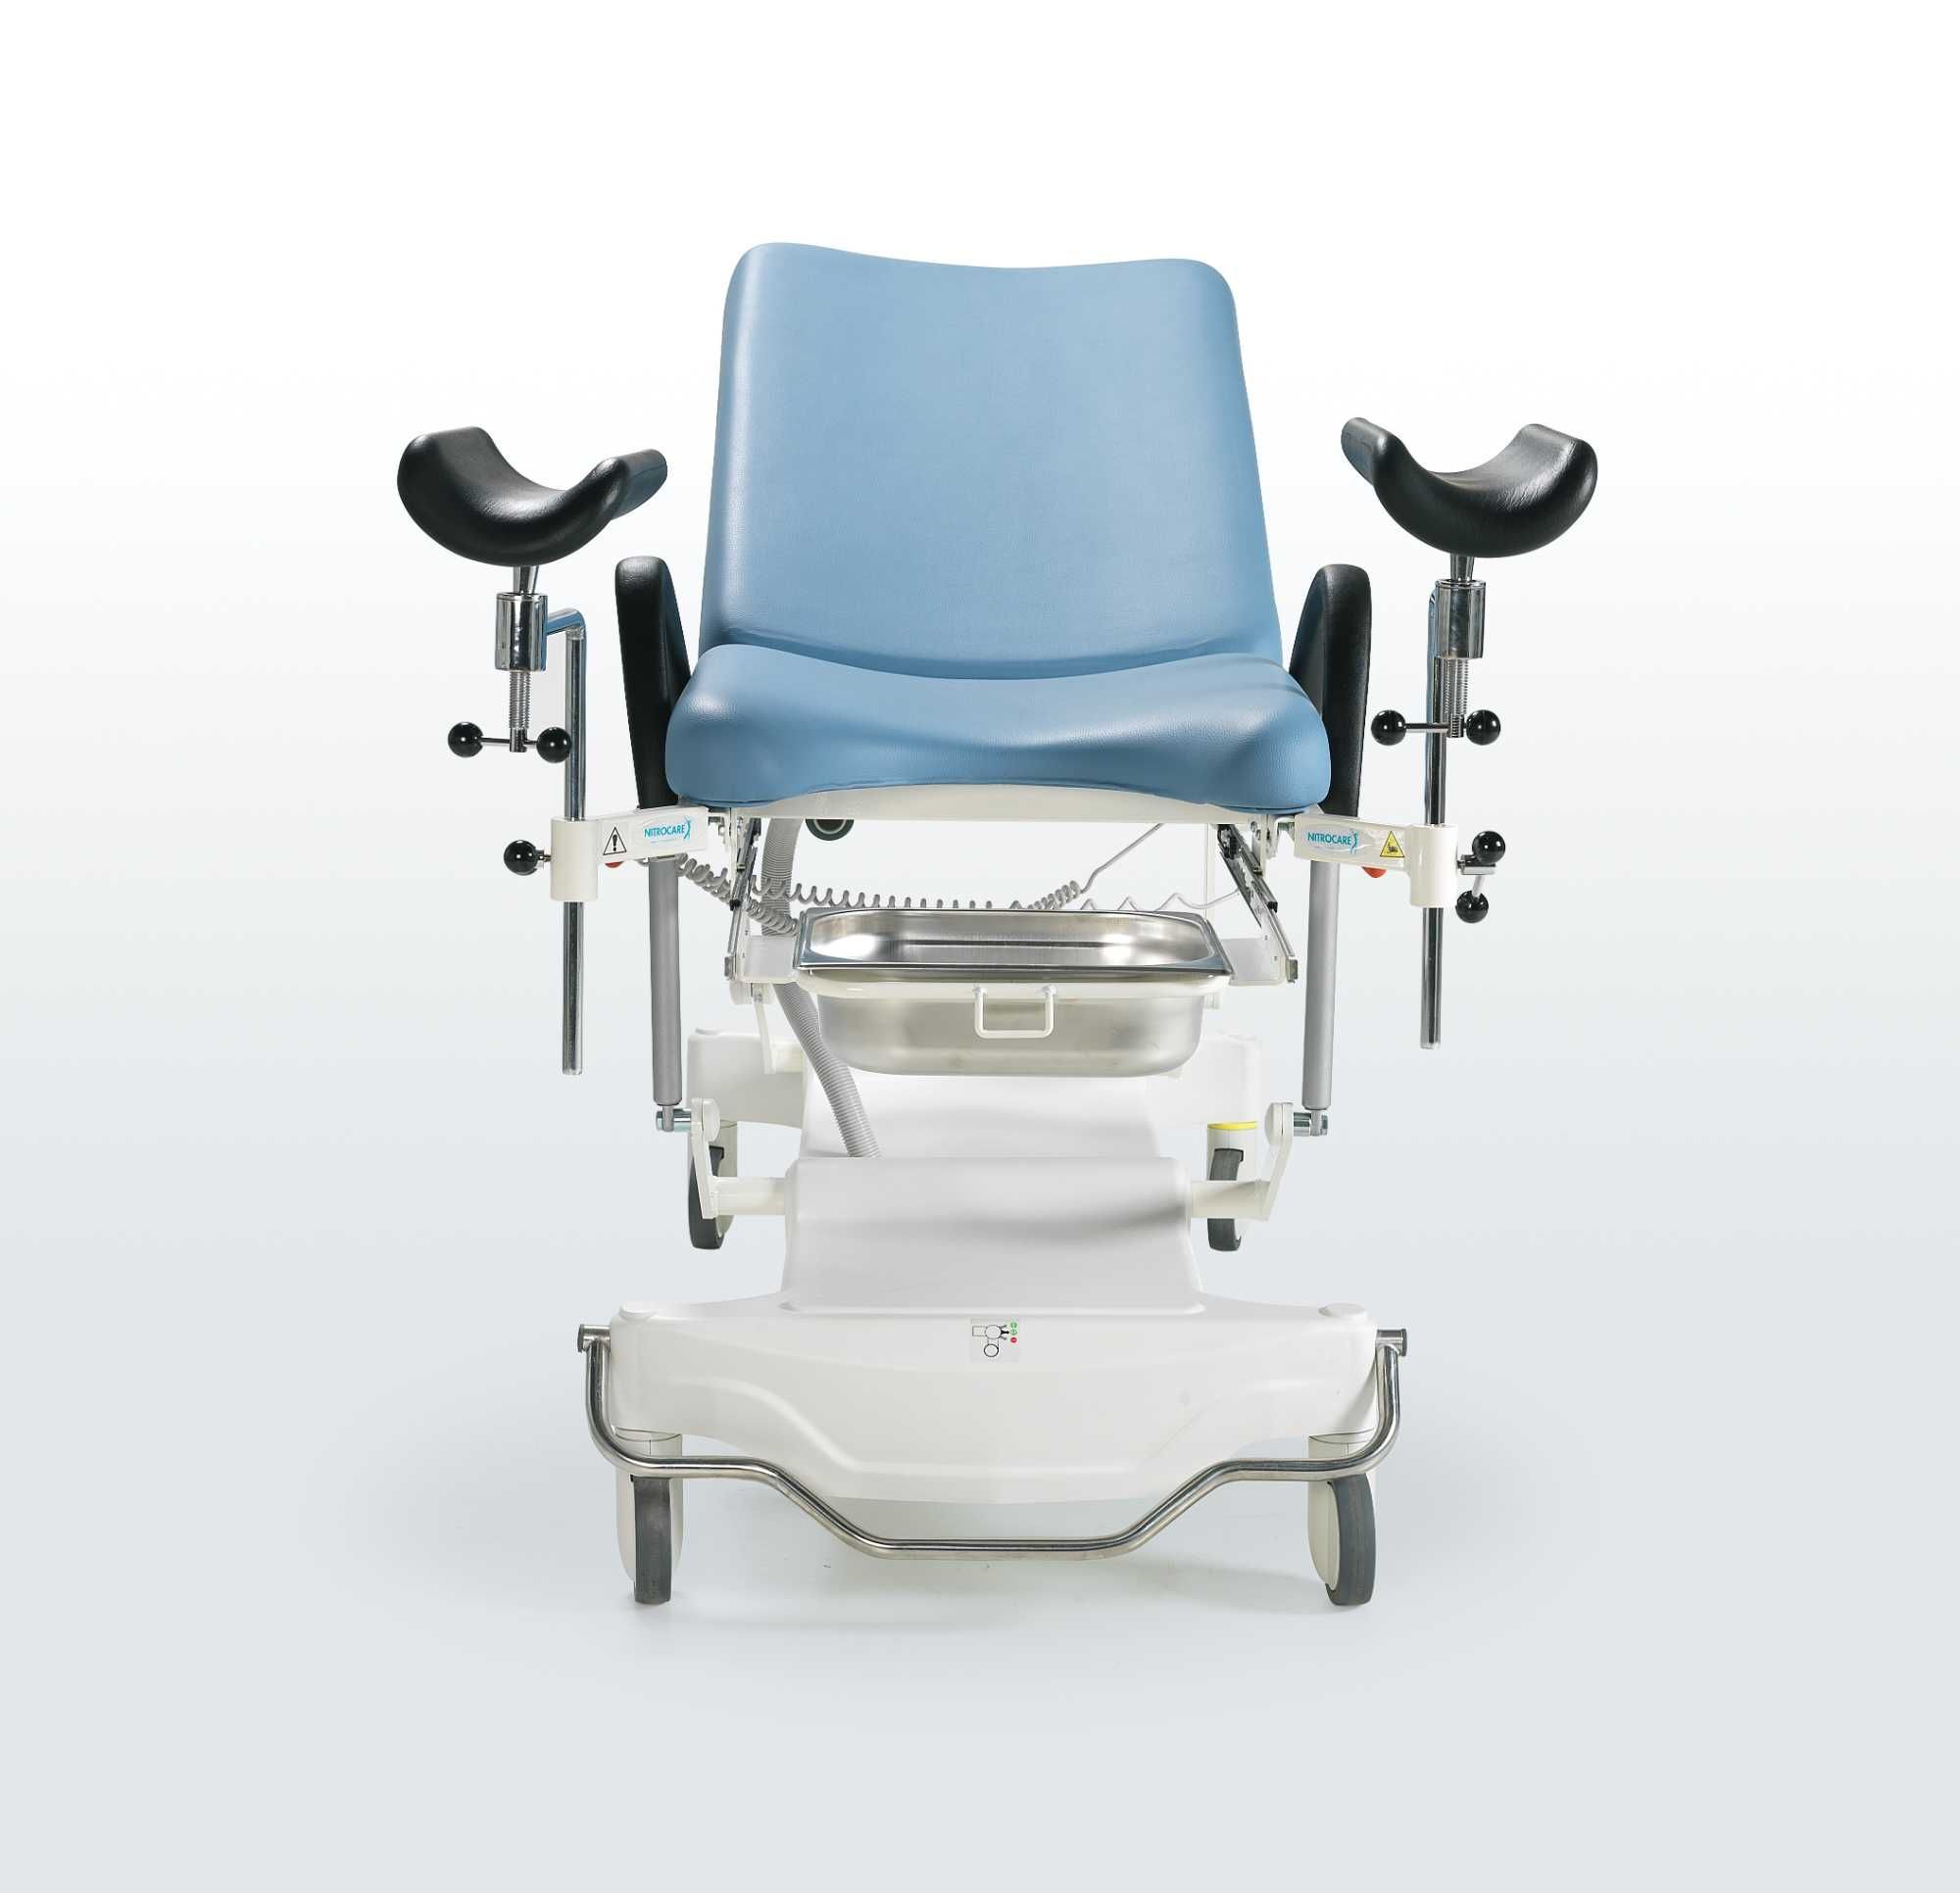 Гинекологическое кресло, электрическое (2 мотора) JMM 01, Турция